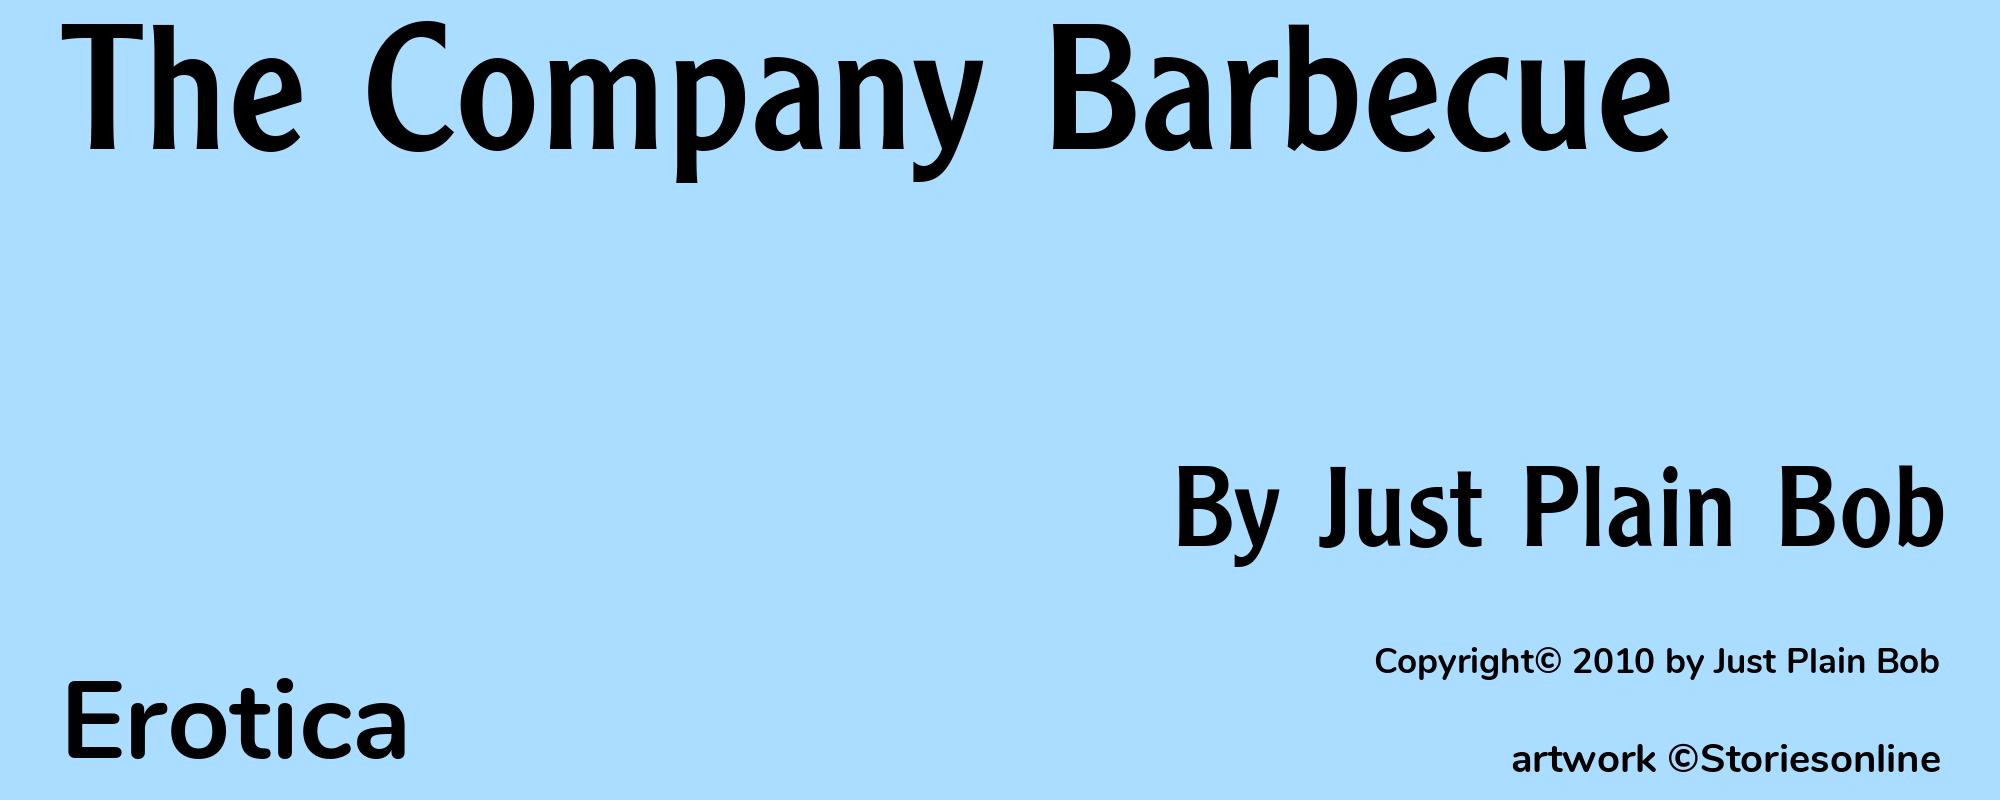 The Company Barbecue - Cover